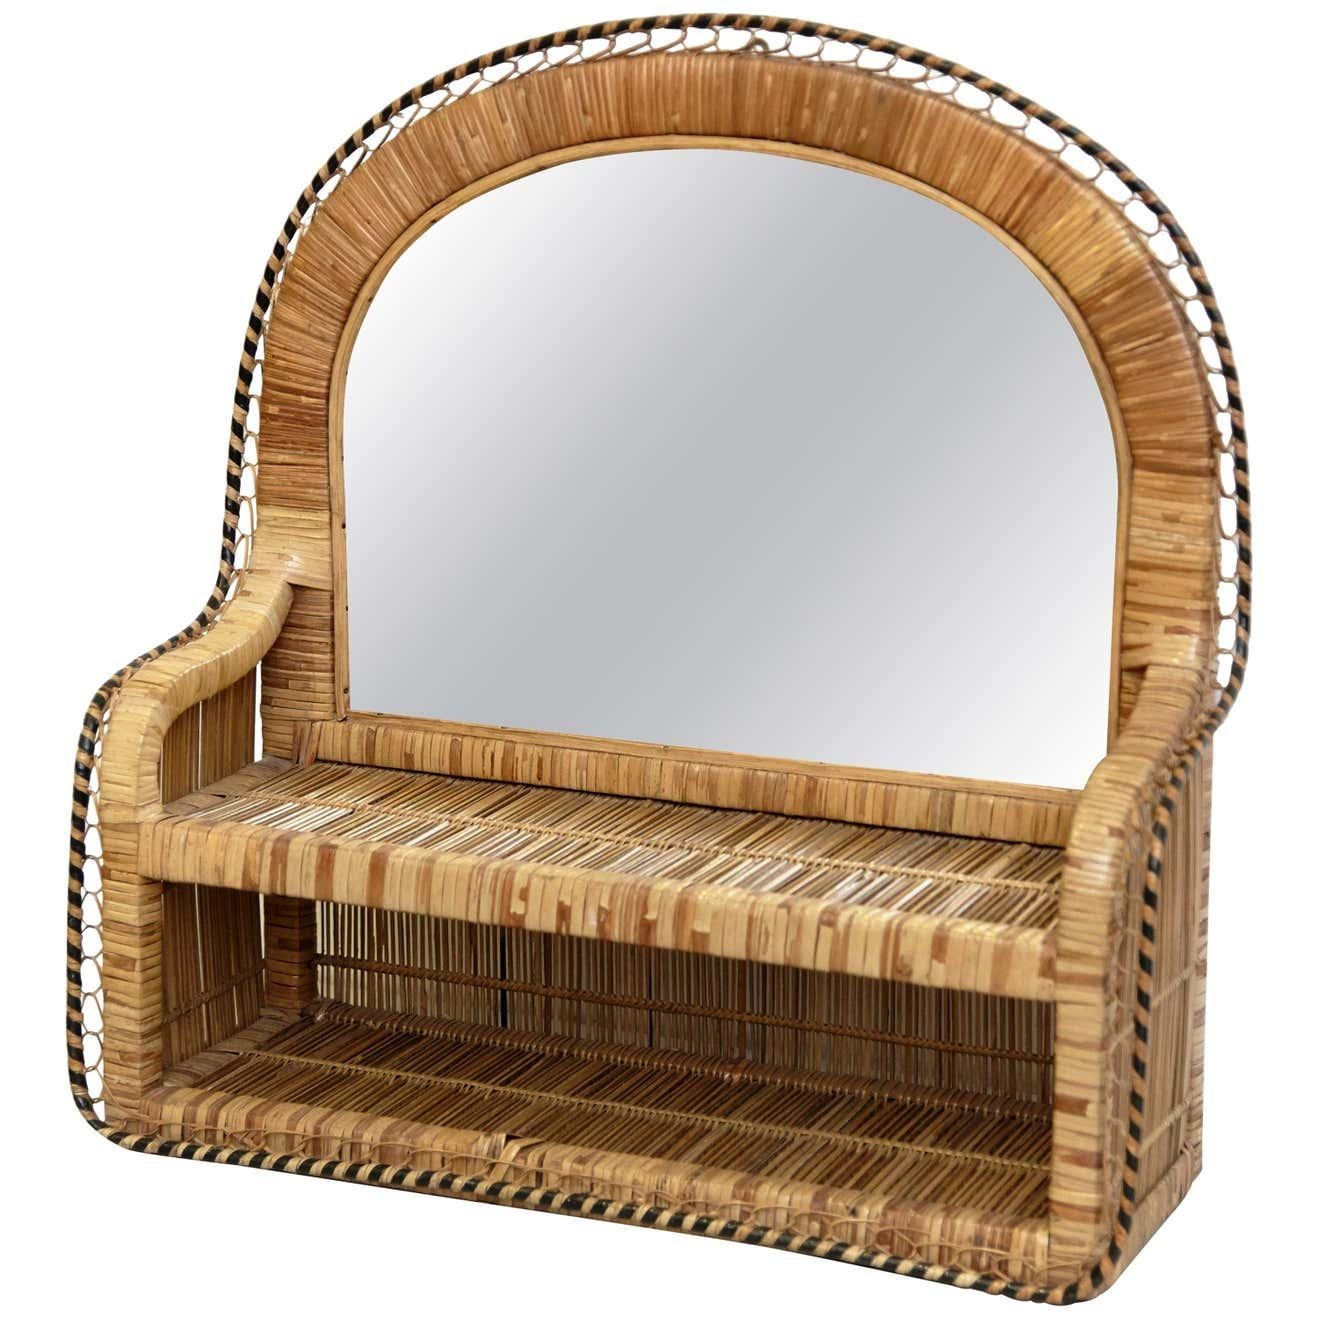 Mid-Century Modern Spiegel Rattan handgefertigt, um 1960
Traditionell in französischer Sprache hergestellt.
Von einem unbekannten Designer.

Originaler Zustand mit geringen alters- und gebrauchsbedingten Abnutzungserscheinungen, der eine schöne